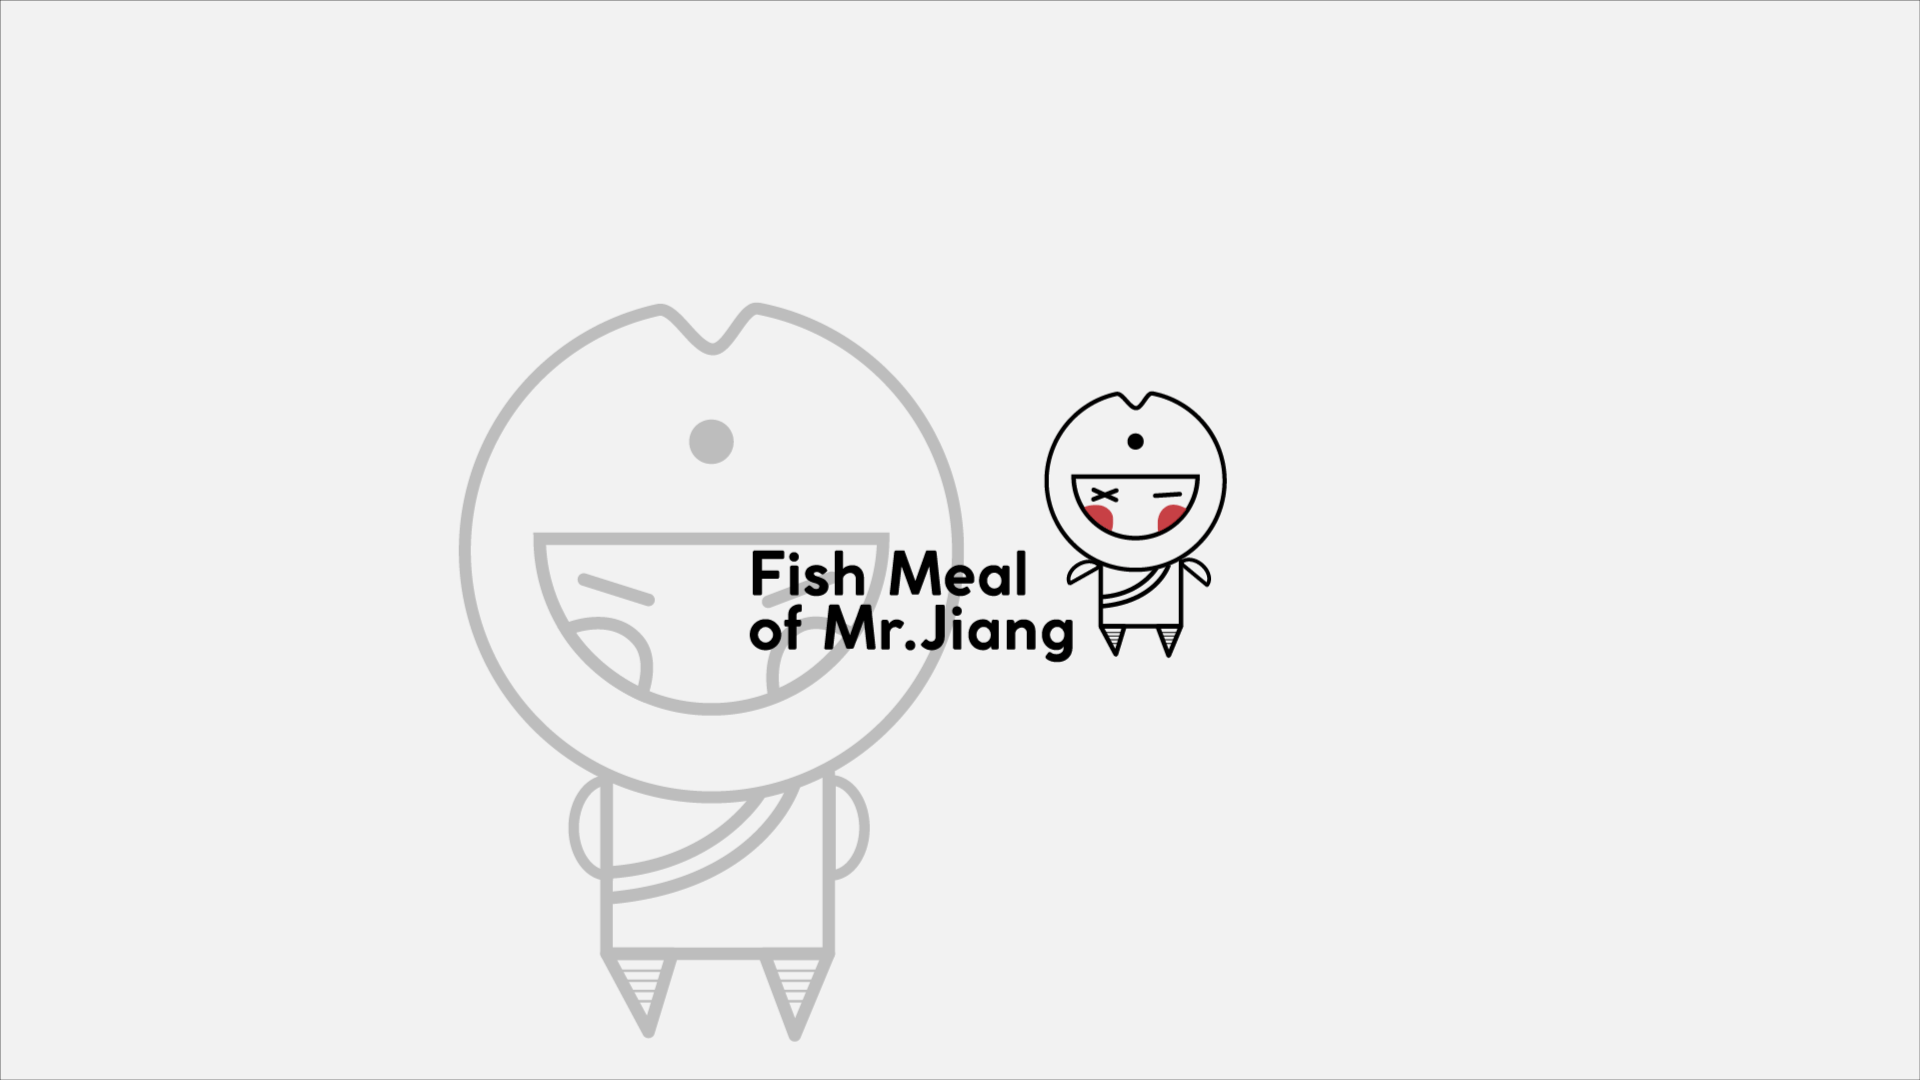 Fish Meal of Mr.Jiang/粉爱江小鱼